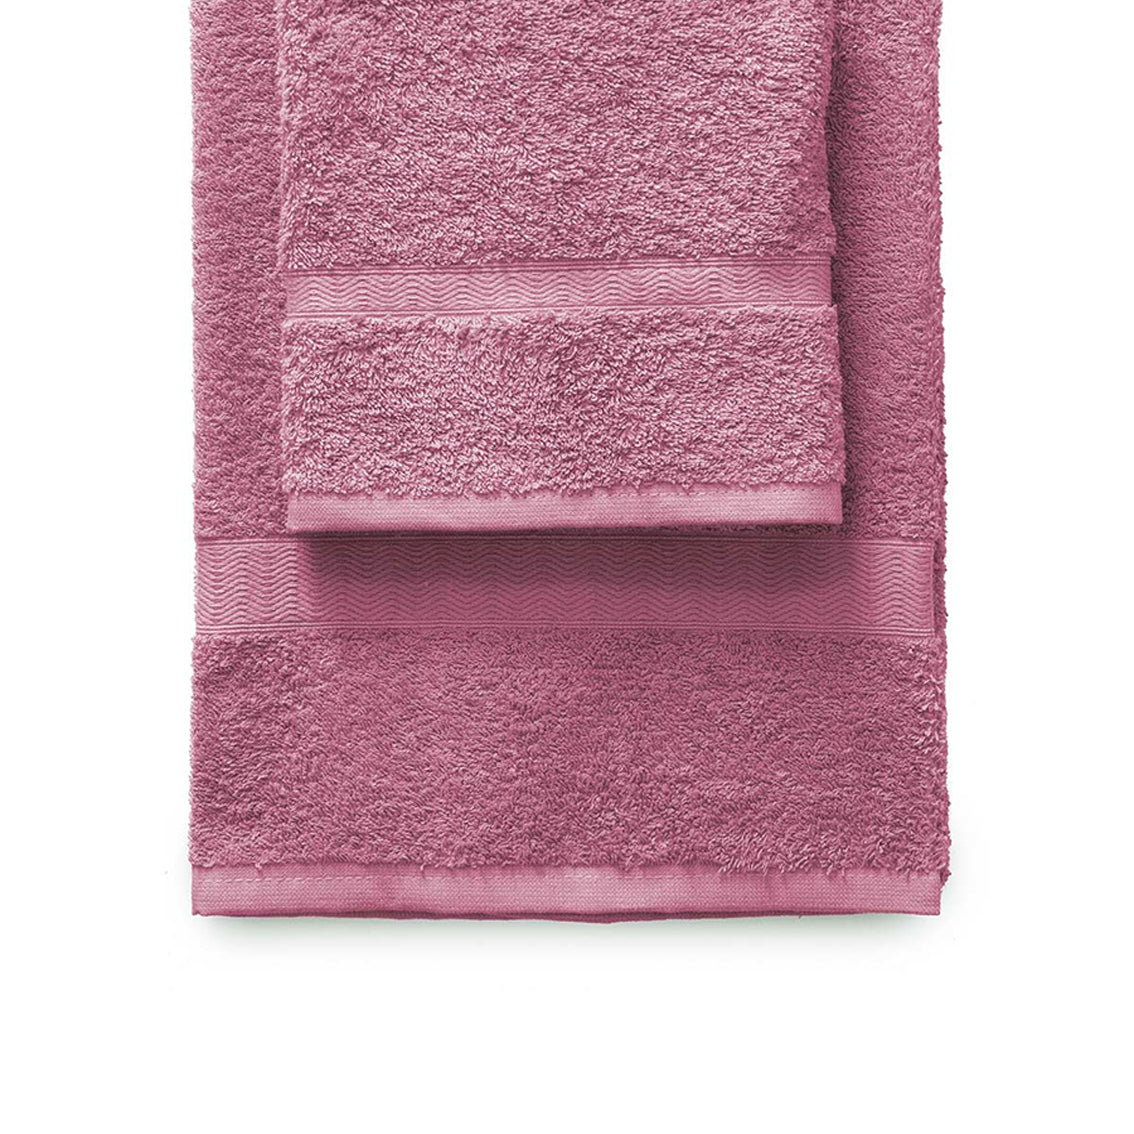 Towel set 1+1 Gabel mod. Plain dyed in 420 g/m2 sponge